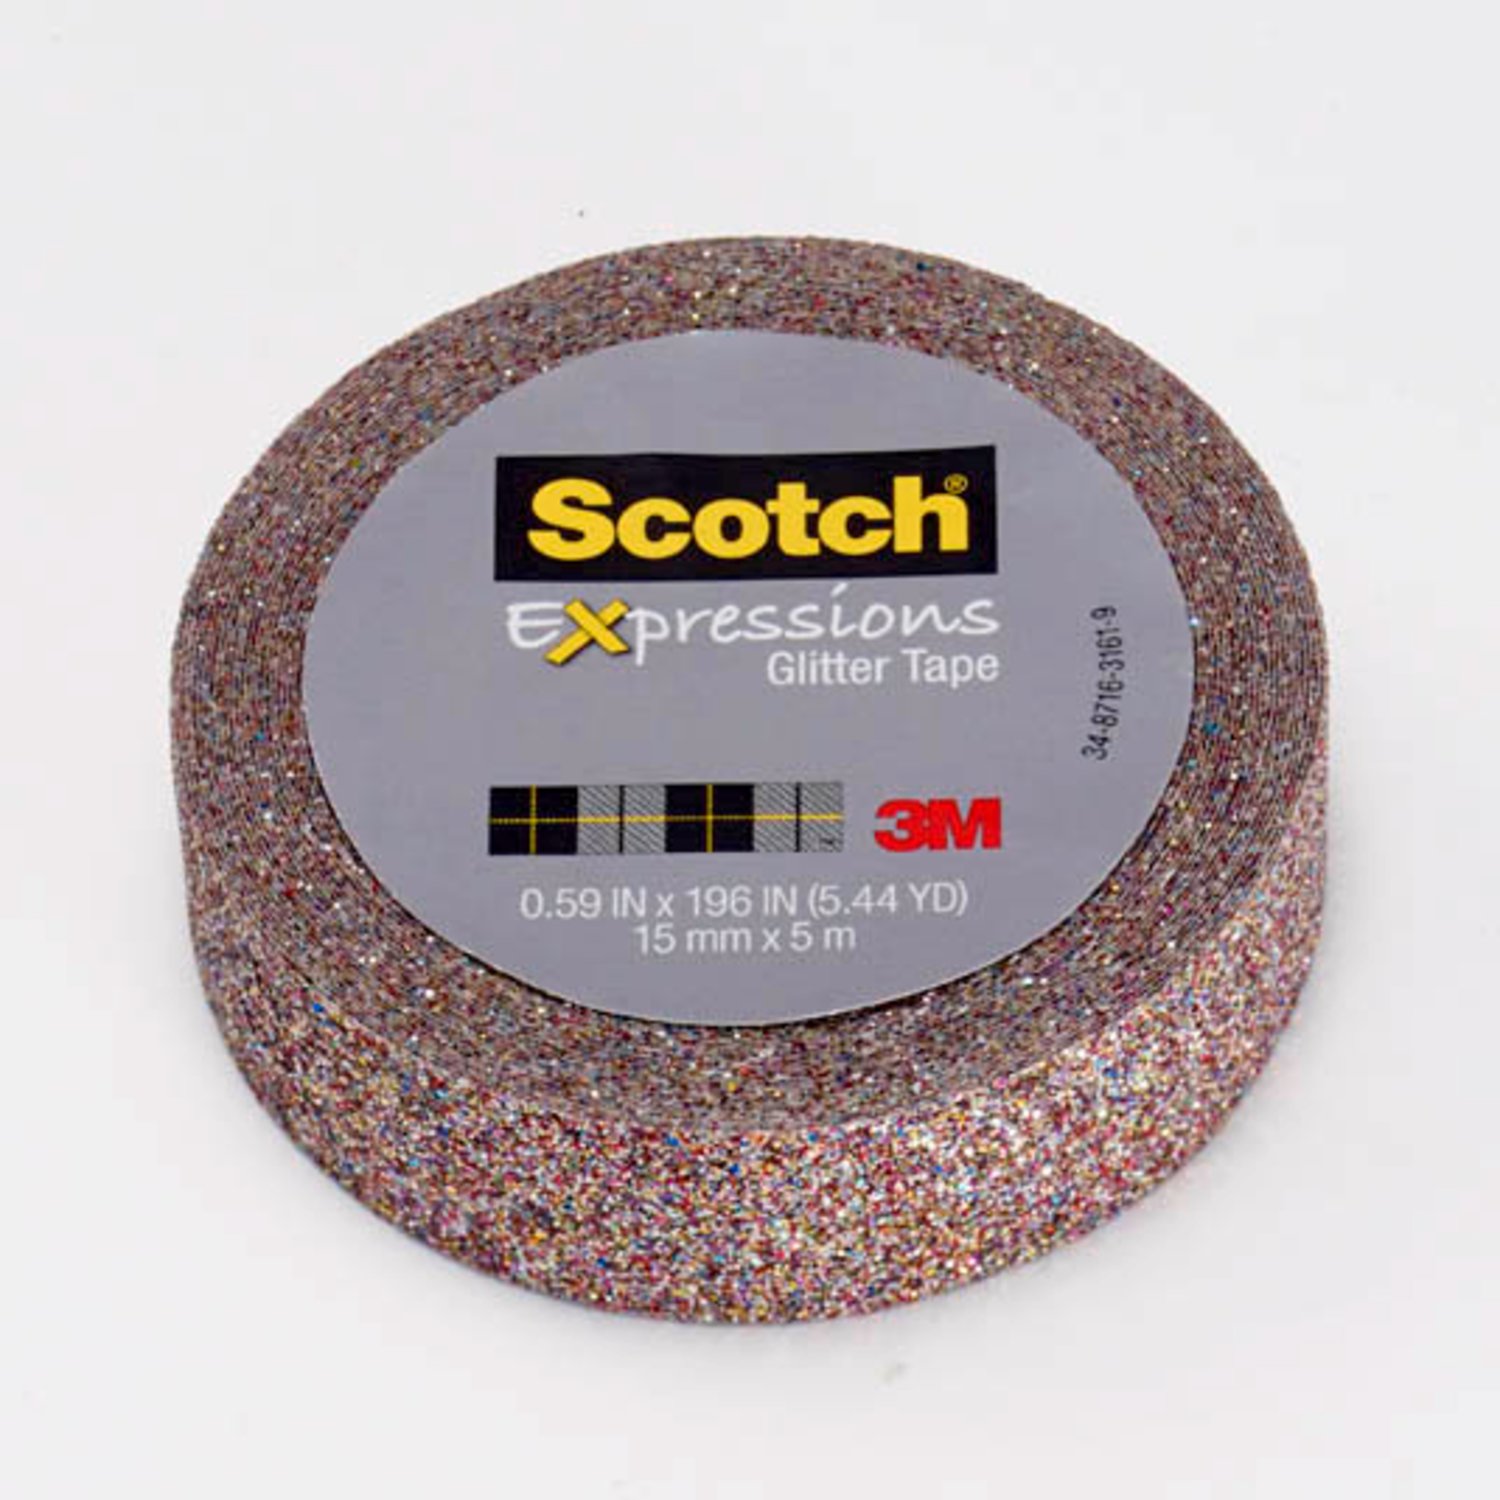 7100143030 - Scotch Expressions Glitter Tape C514-MUL, .59 in x 196 in (15 mm x 5 m)
Multi-Colored Glitter